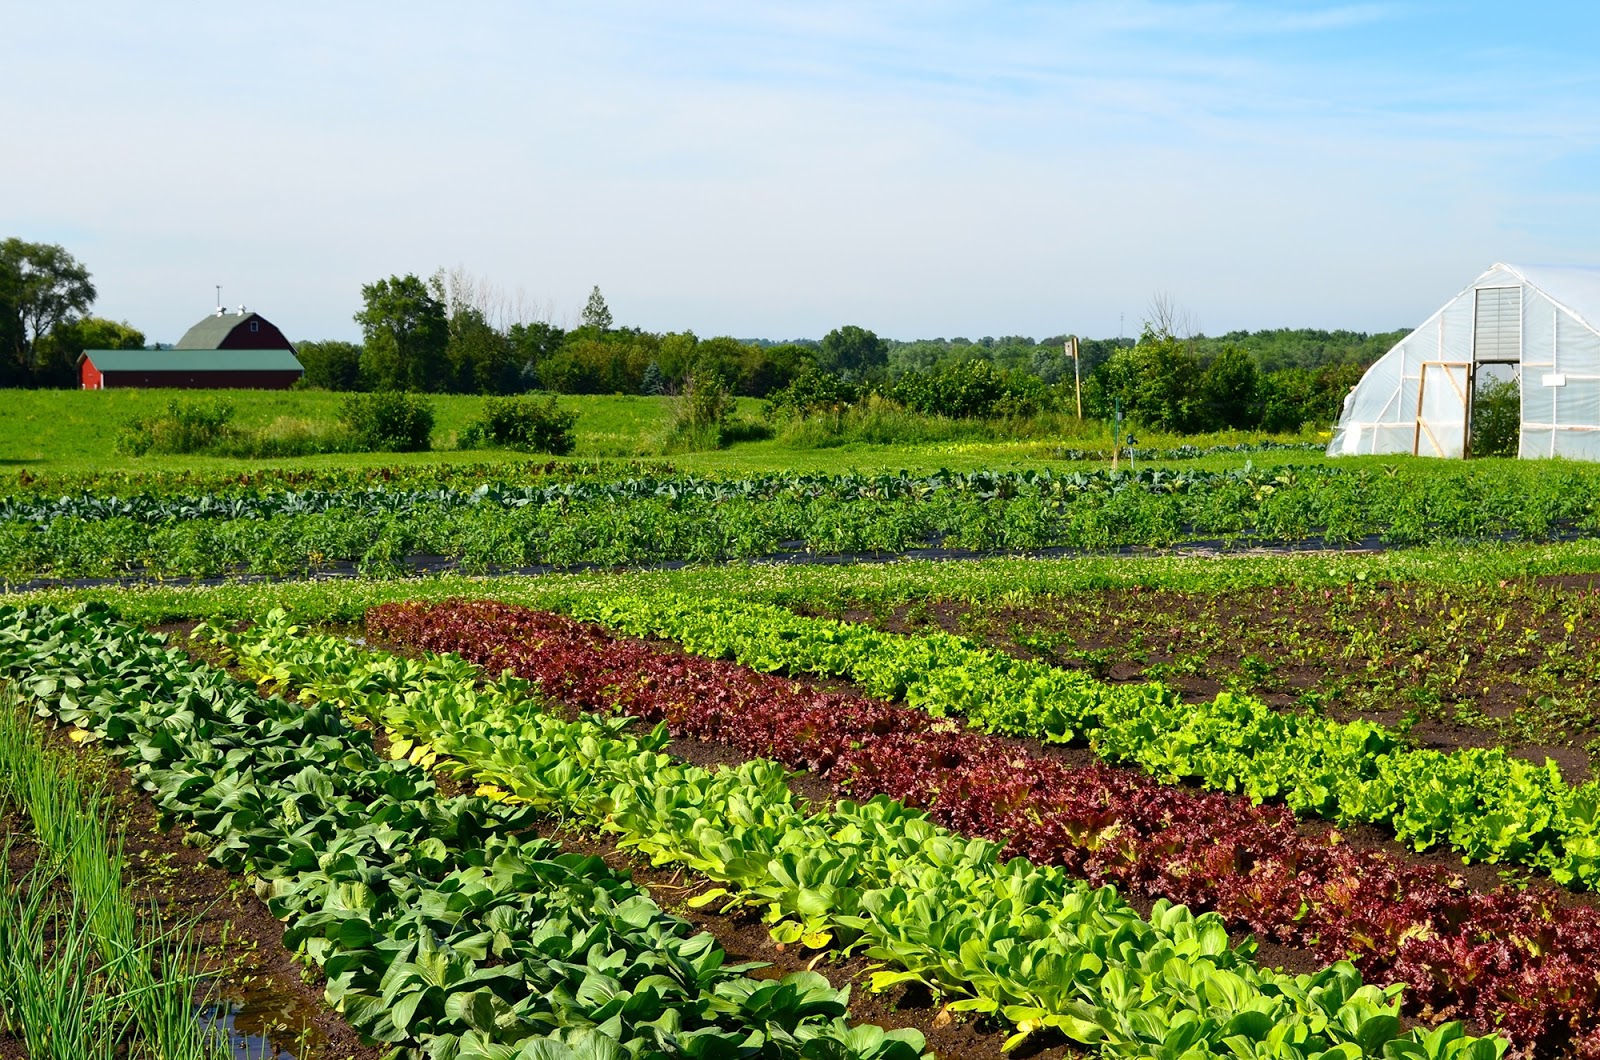  Pertanian  Organik Sebagai masa depan pertanian  farmingcenter